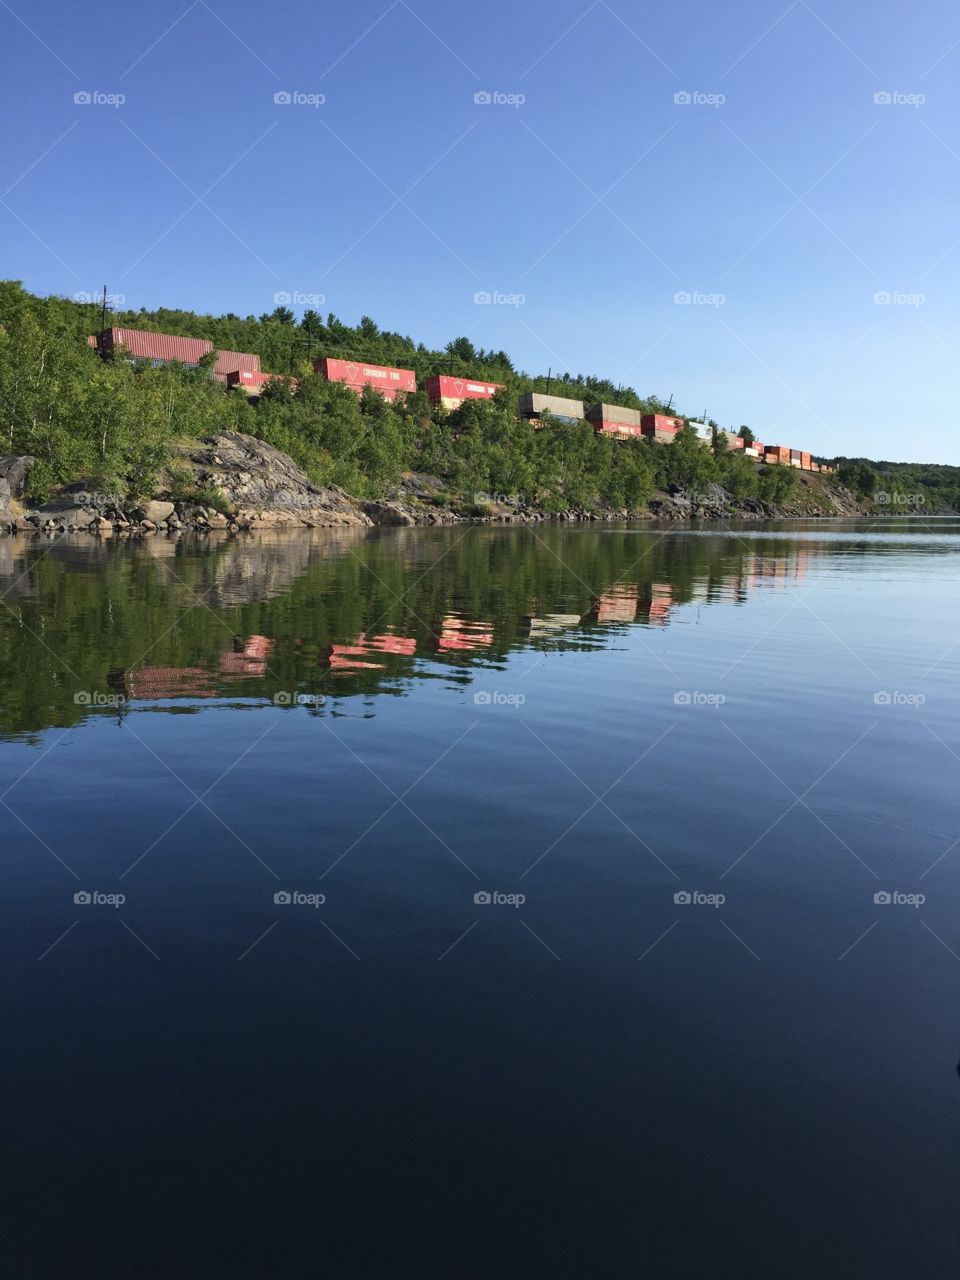 Blue sky reflecting on lake